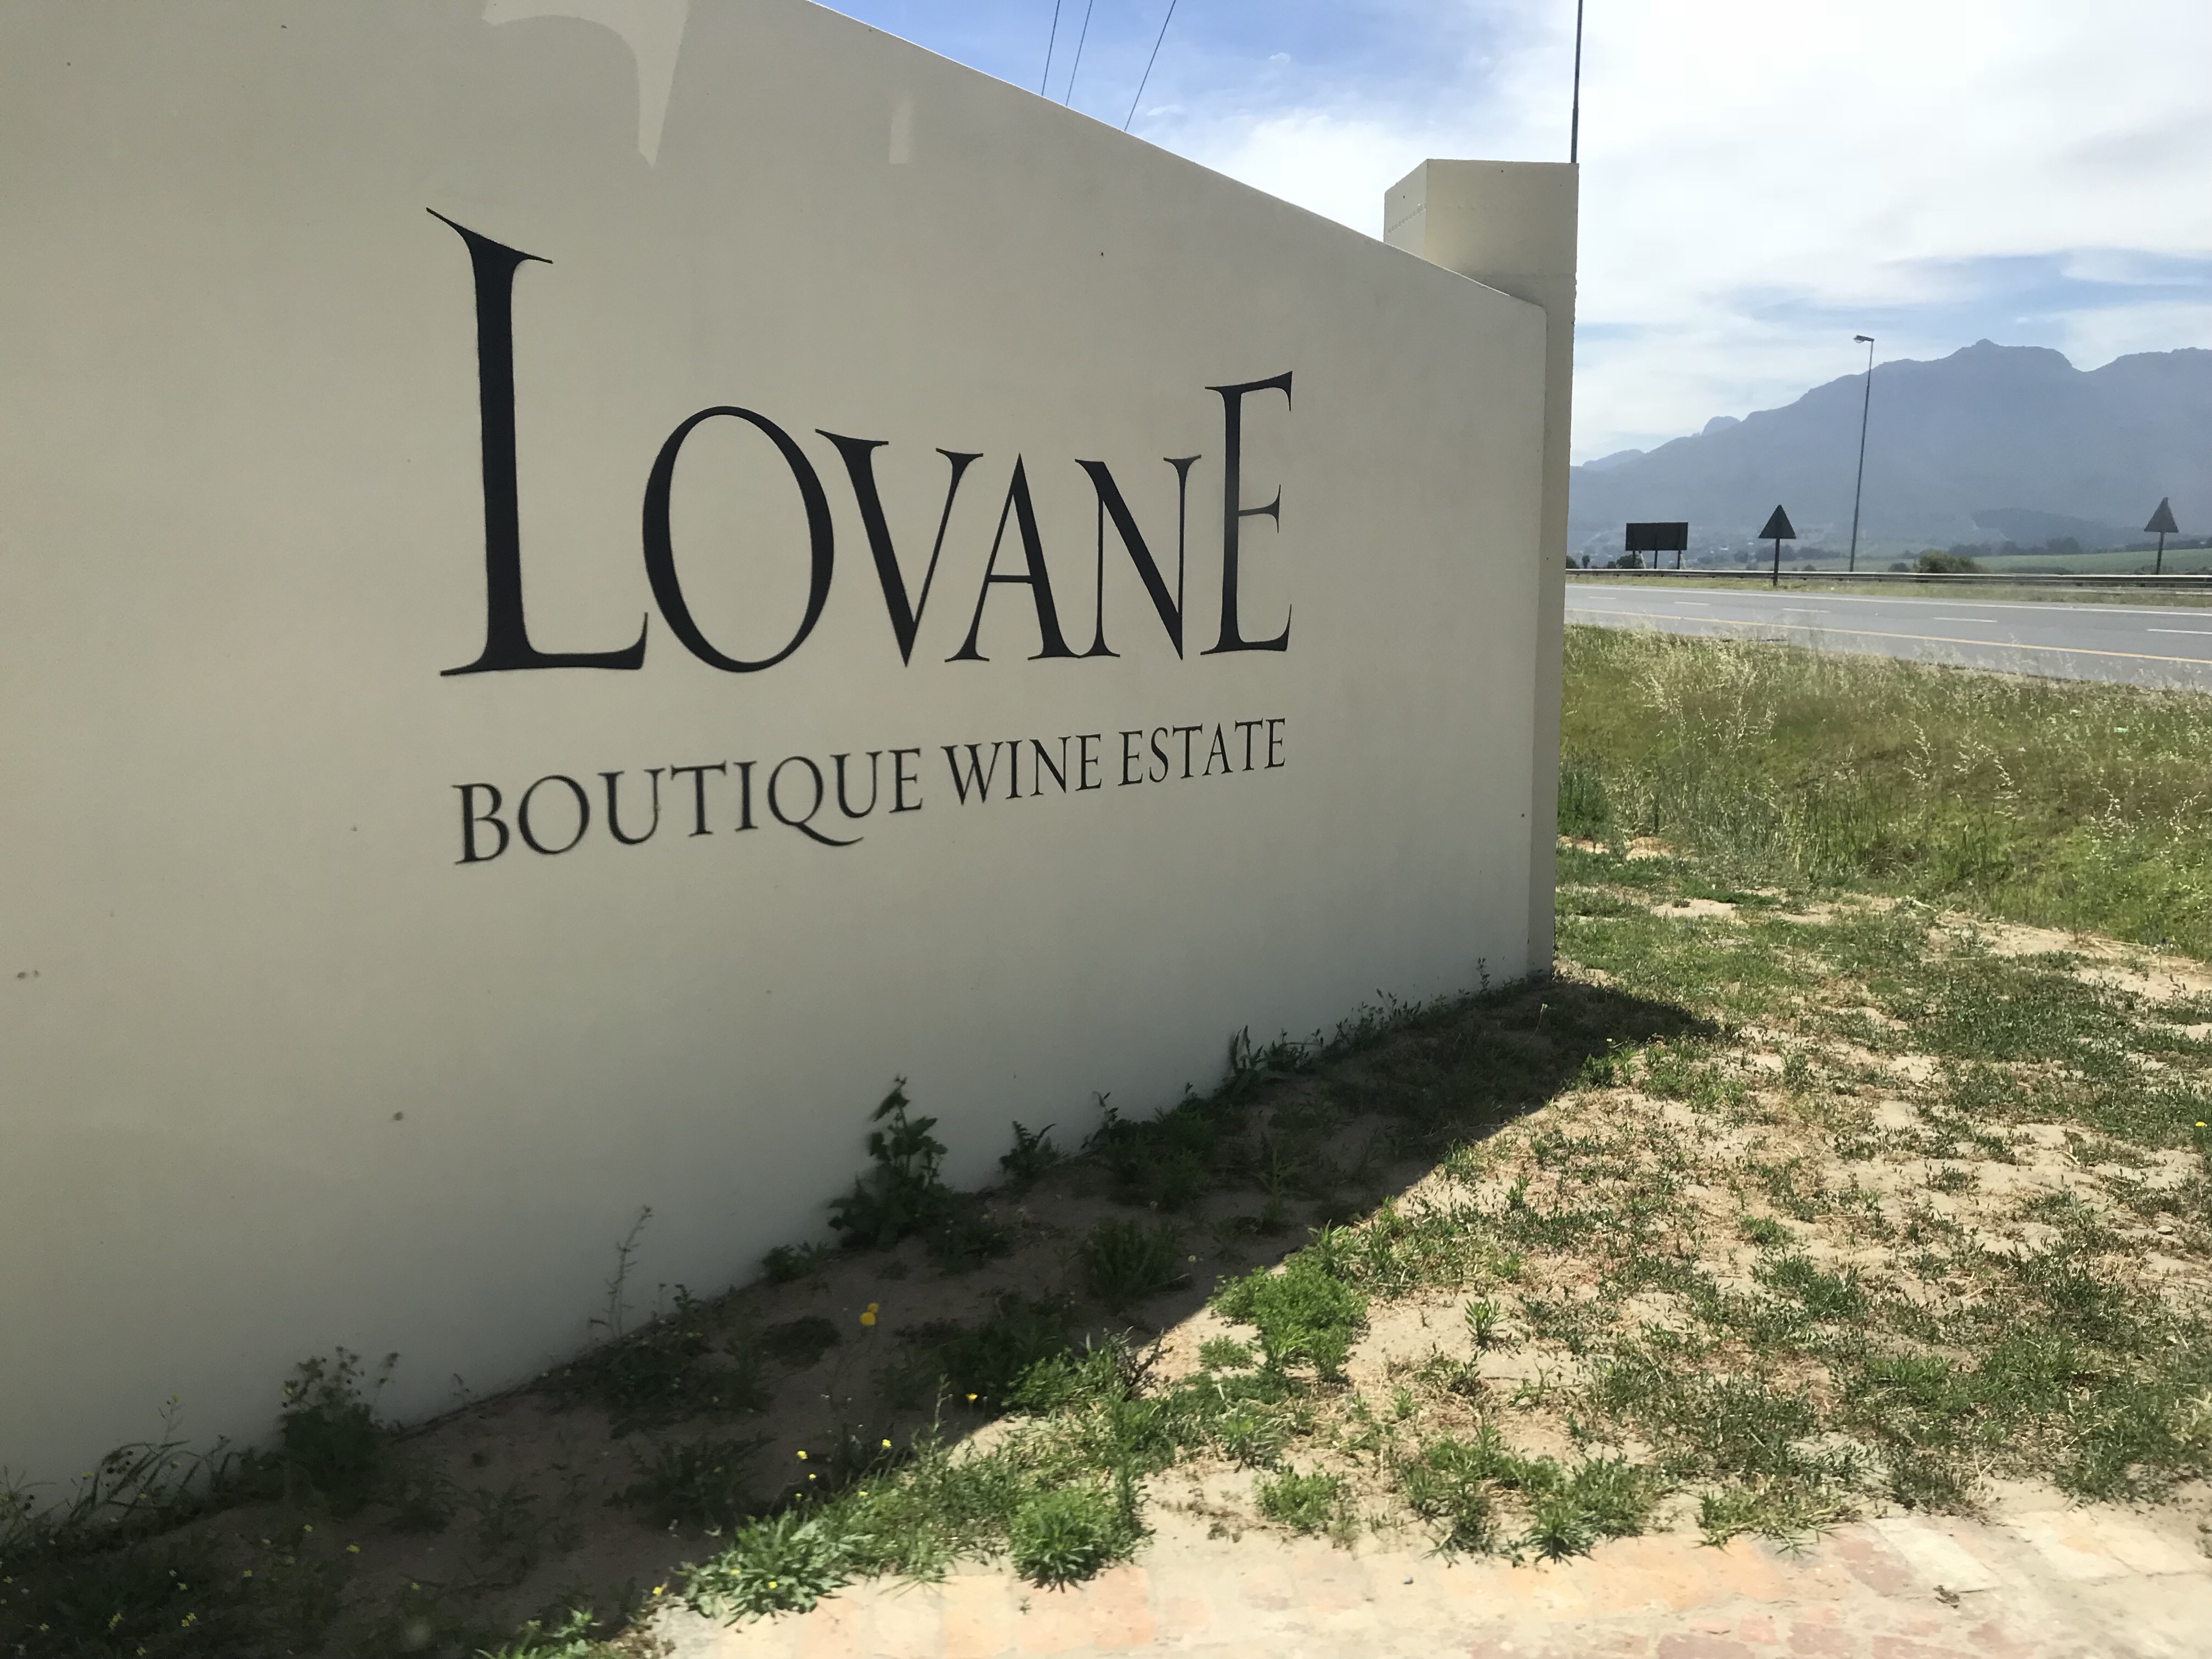  Lovane Boutique Wine Estate